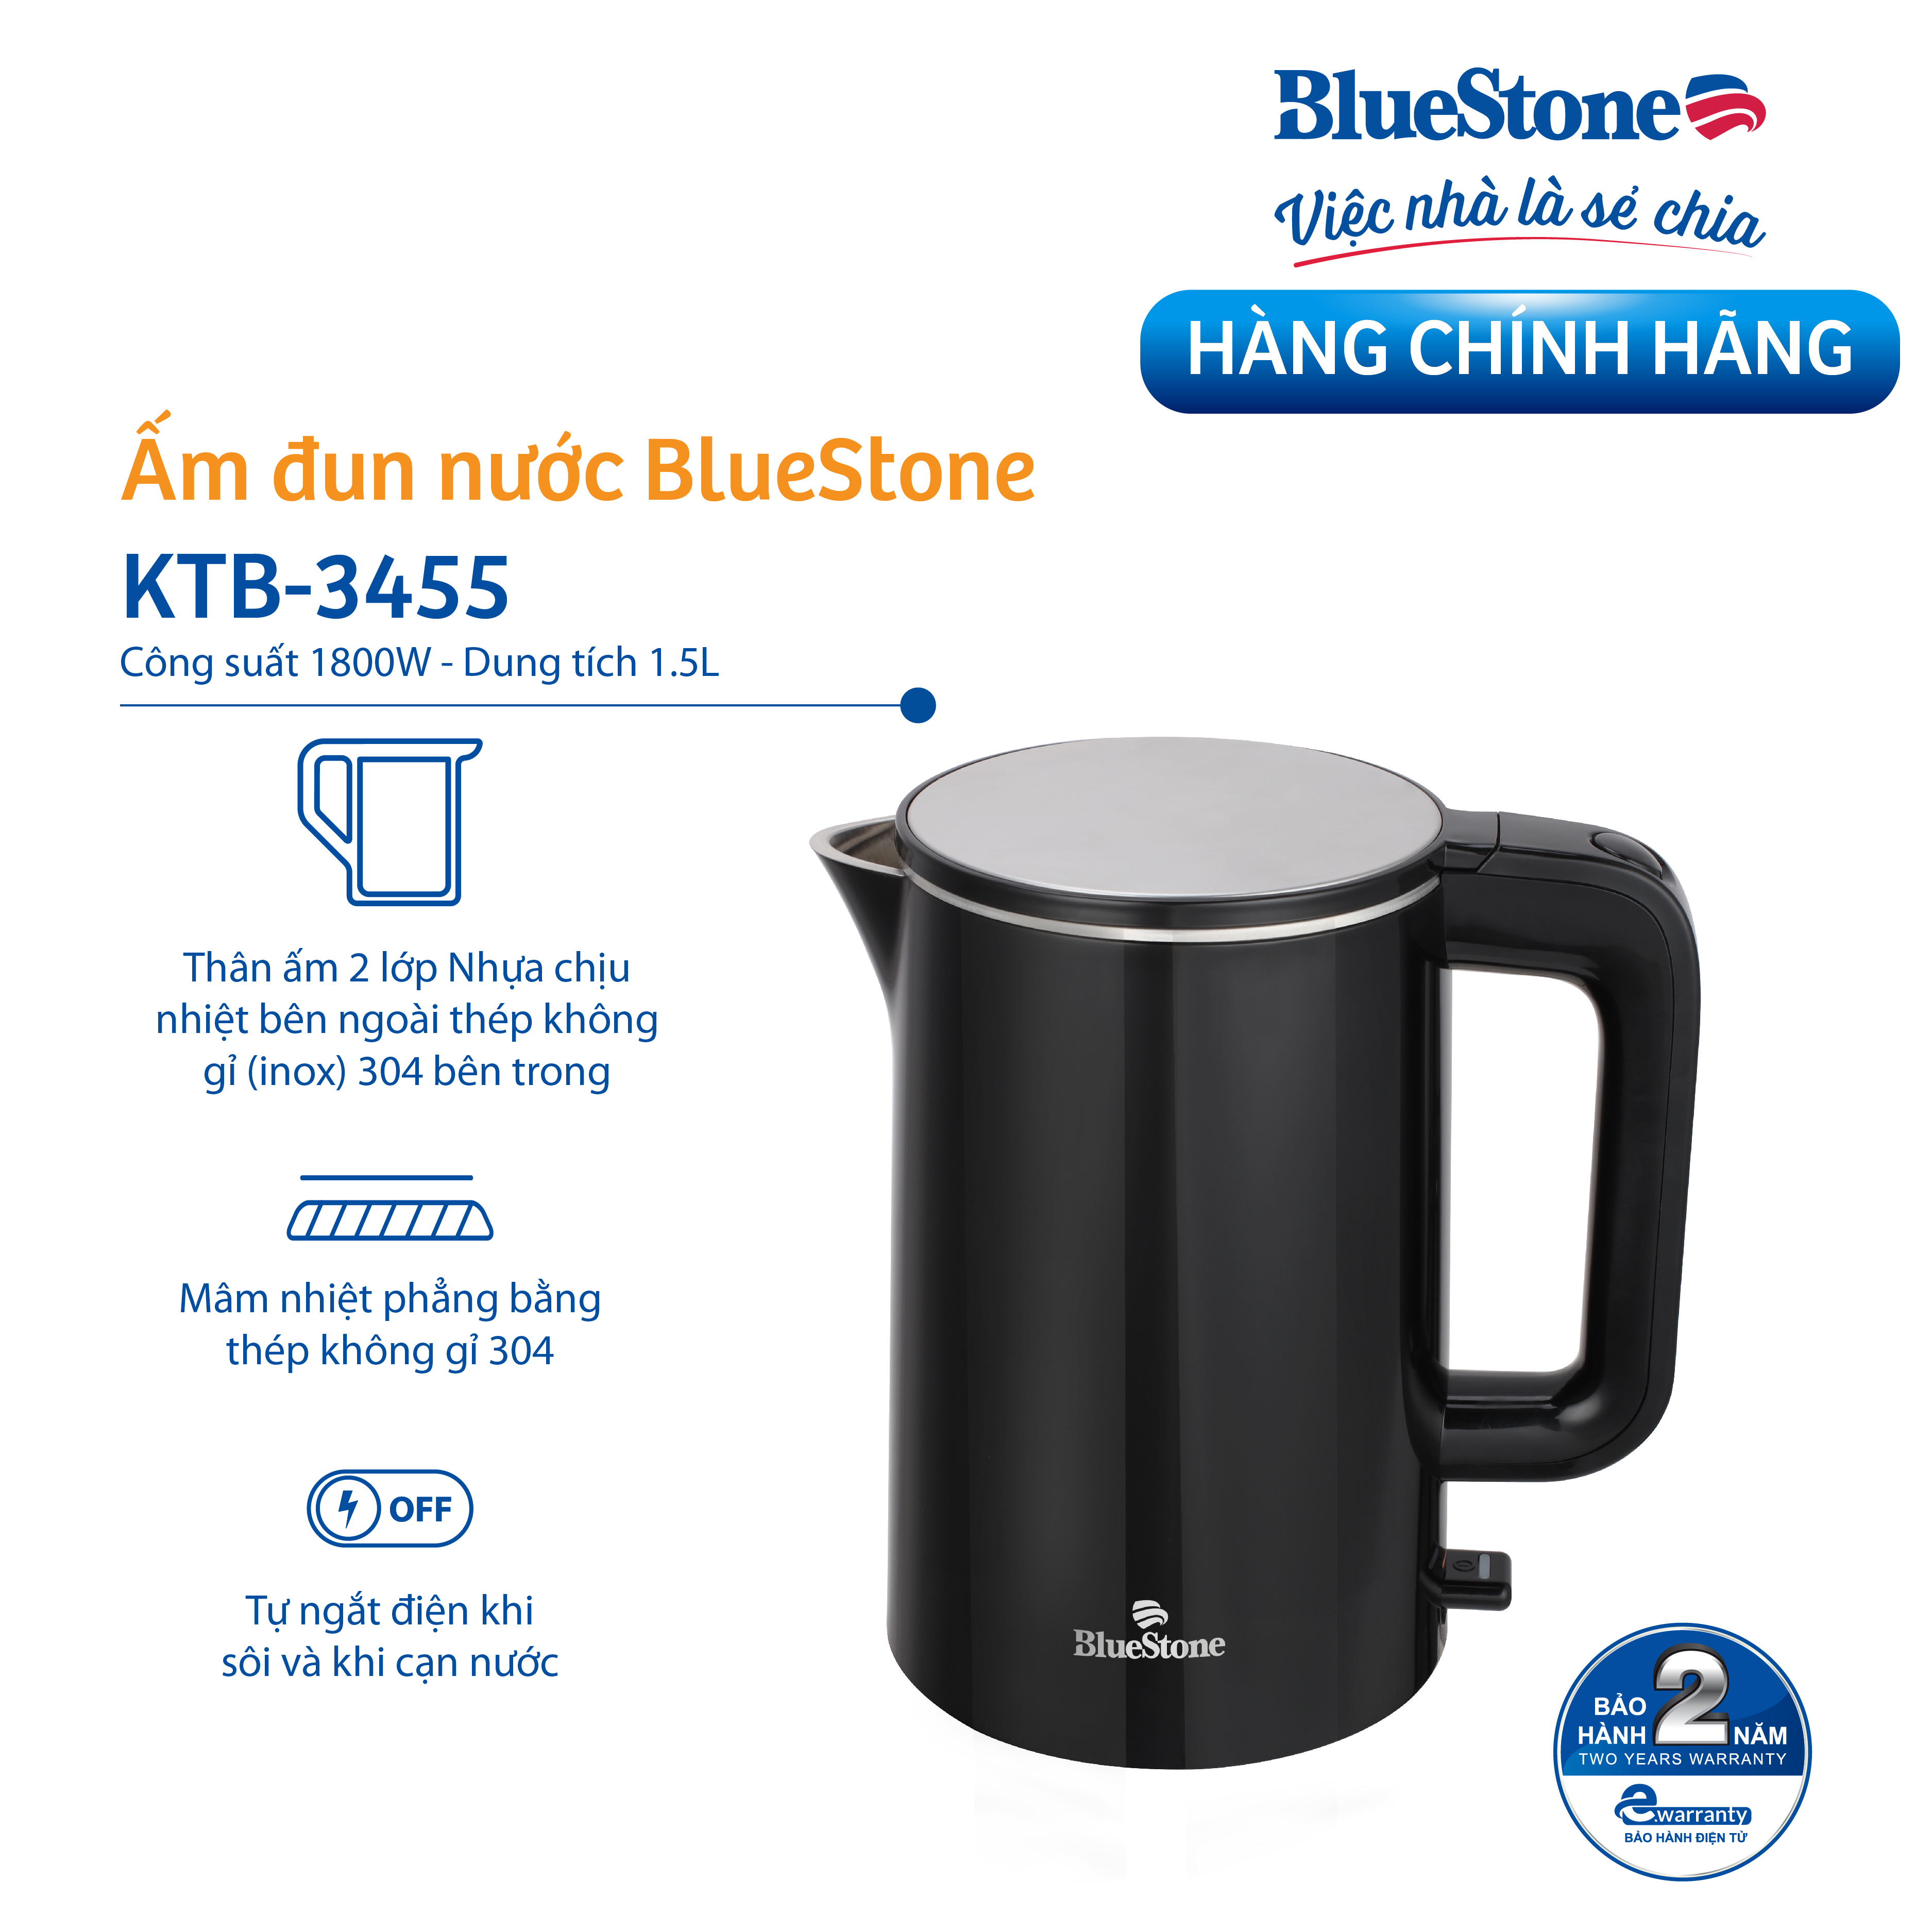 Ấm Đun Siêu Tốc BlueStone KTB-3455 2 Lớp Siêu Bền ( 1.5L - 2200W) - Bảo Hành Điện Tử 2 Năm - Hàng Chính Hãng